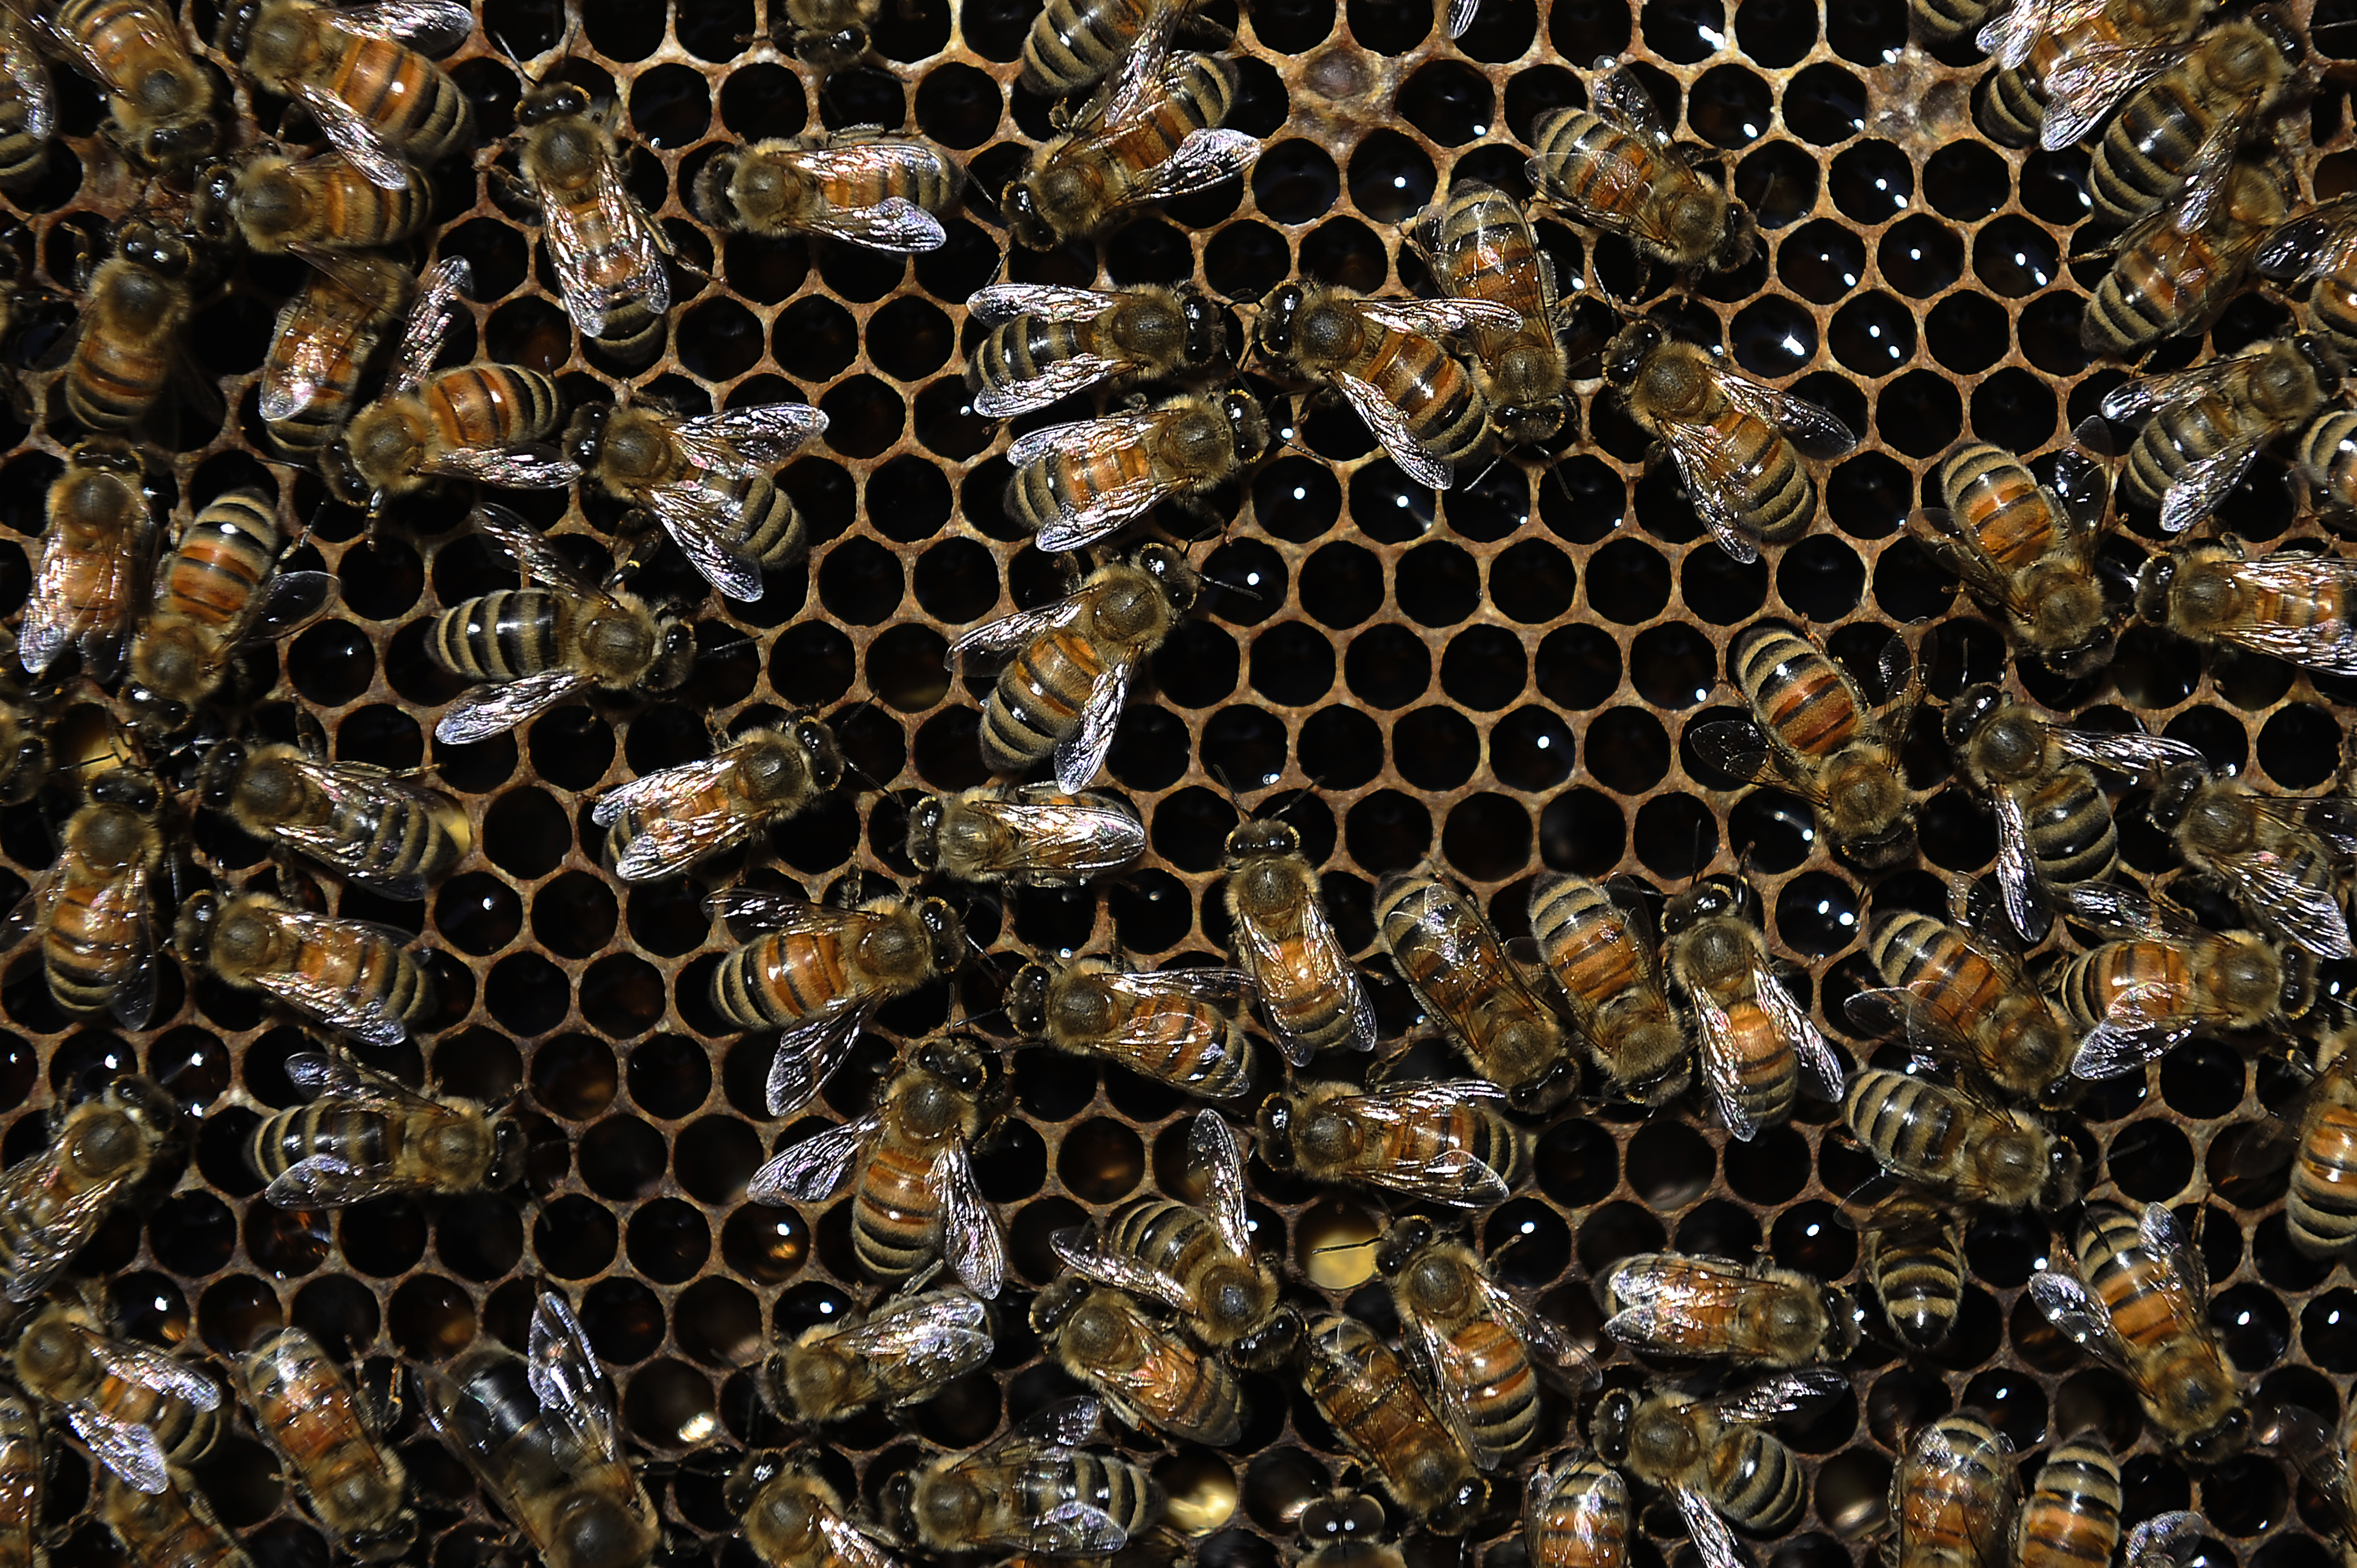 Honeybee Deaths Decline